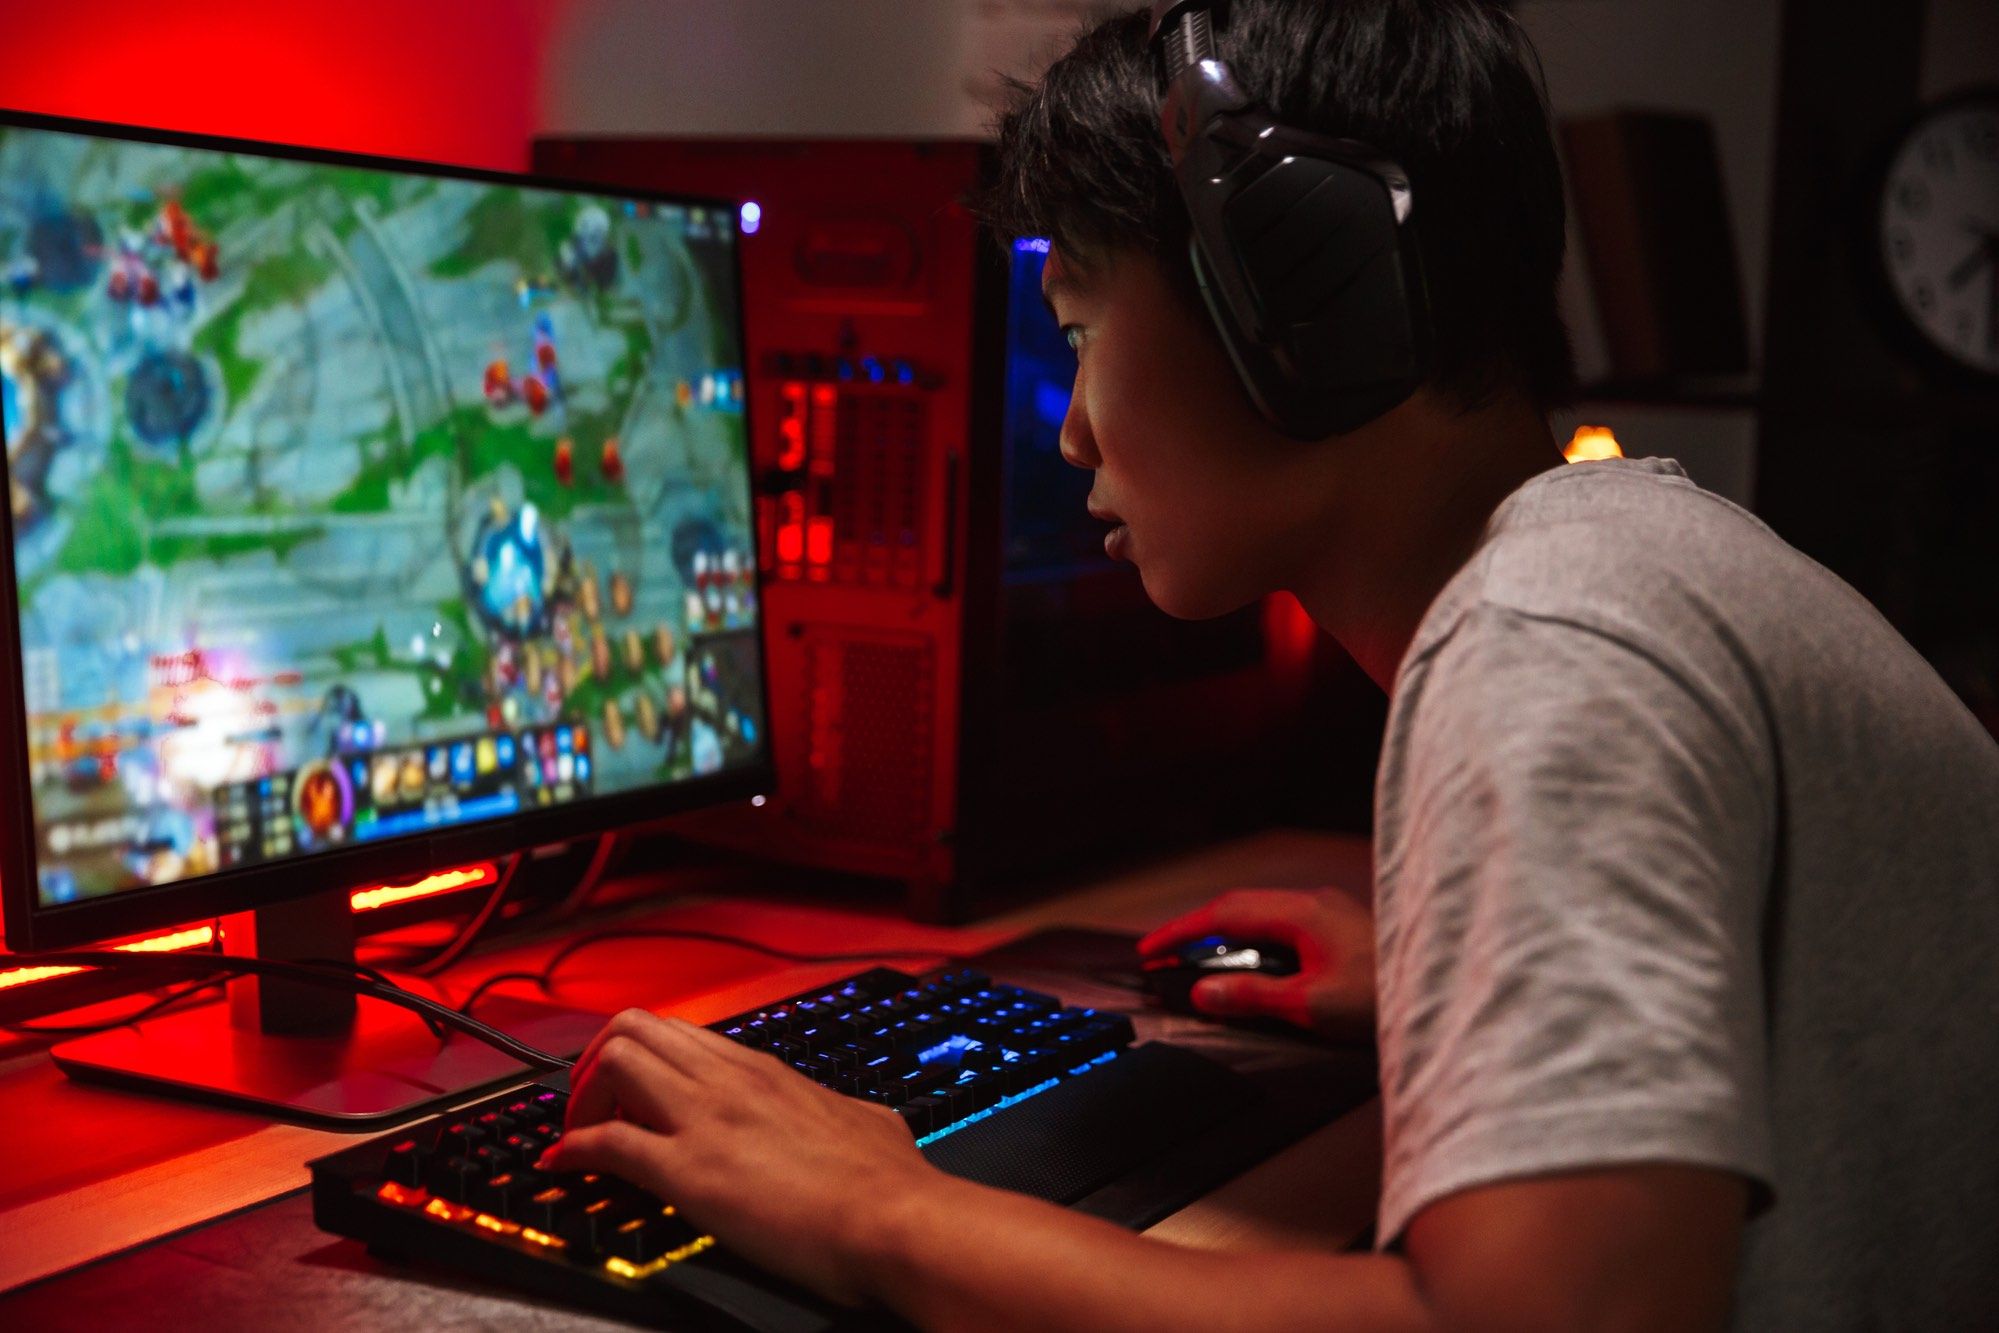 Gamer on computer using gaming keyboard